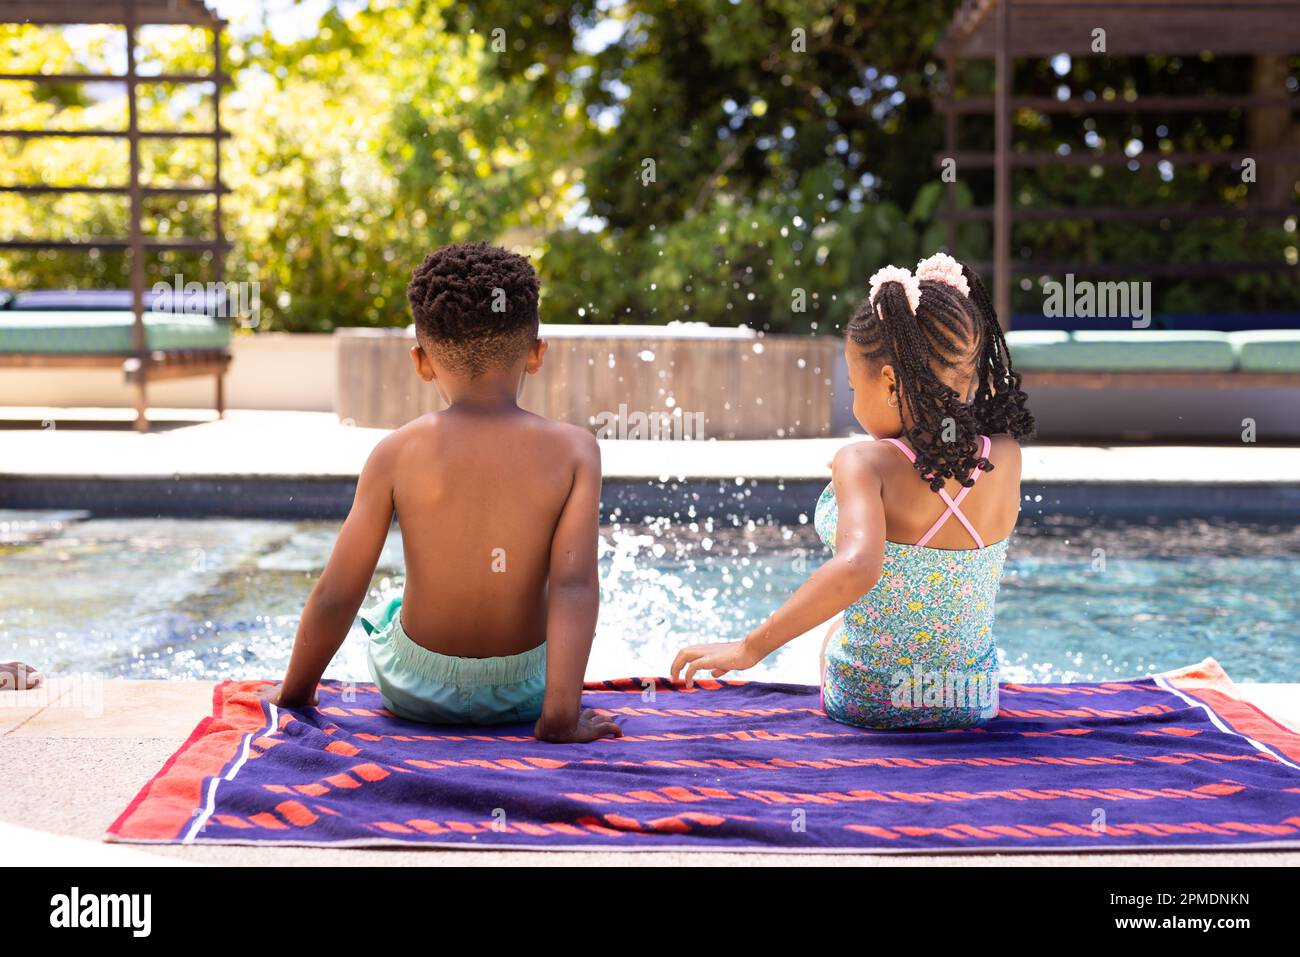 Vue arrière de frères et sœurs afro-américains qui éclabousse de l'eau dans la piscine tout en étant assis sur une serviette au bord de la piscine Banque D'Images